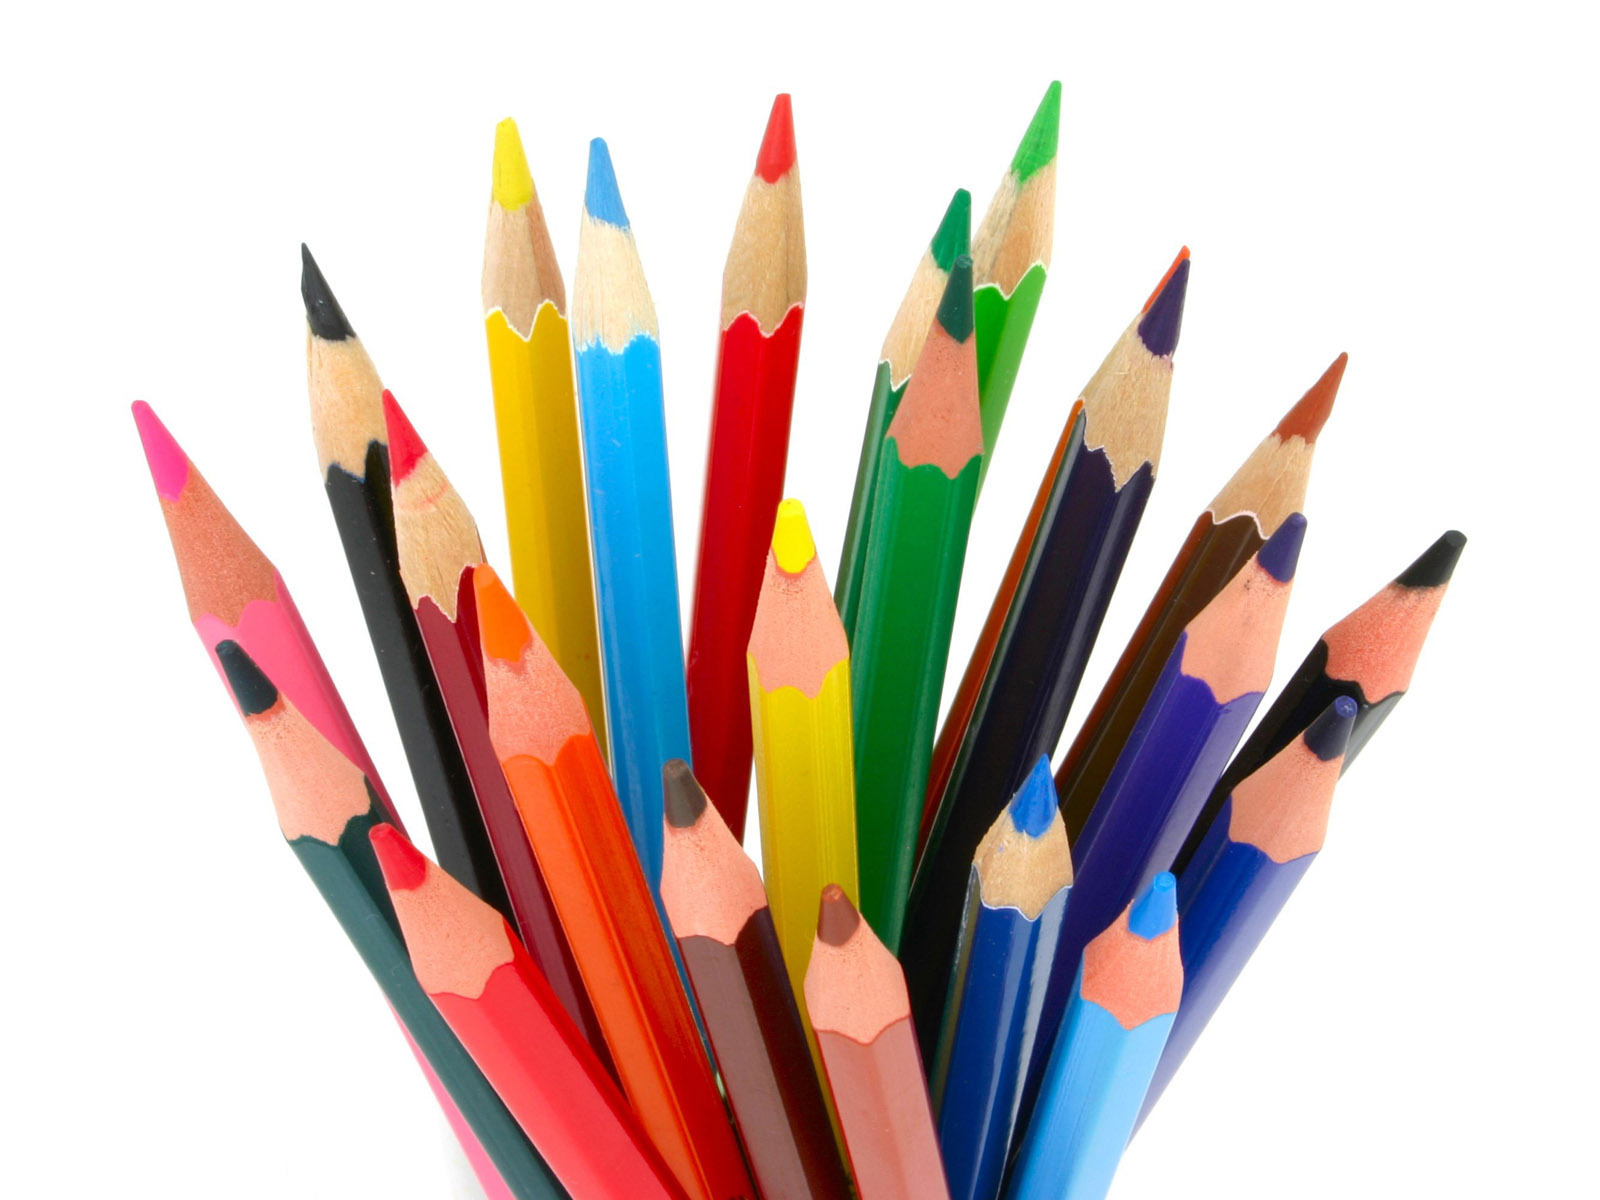 Colored Pencils   Pencils Wallpaper  22186659    Fanpop